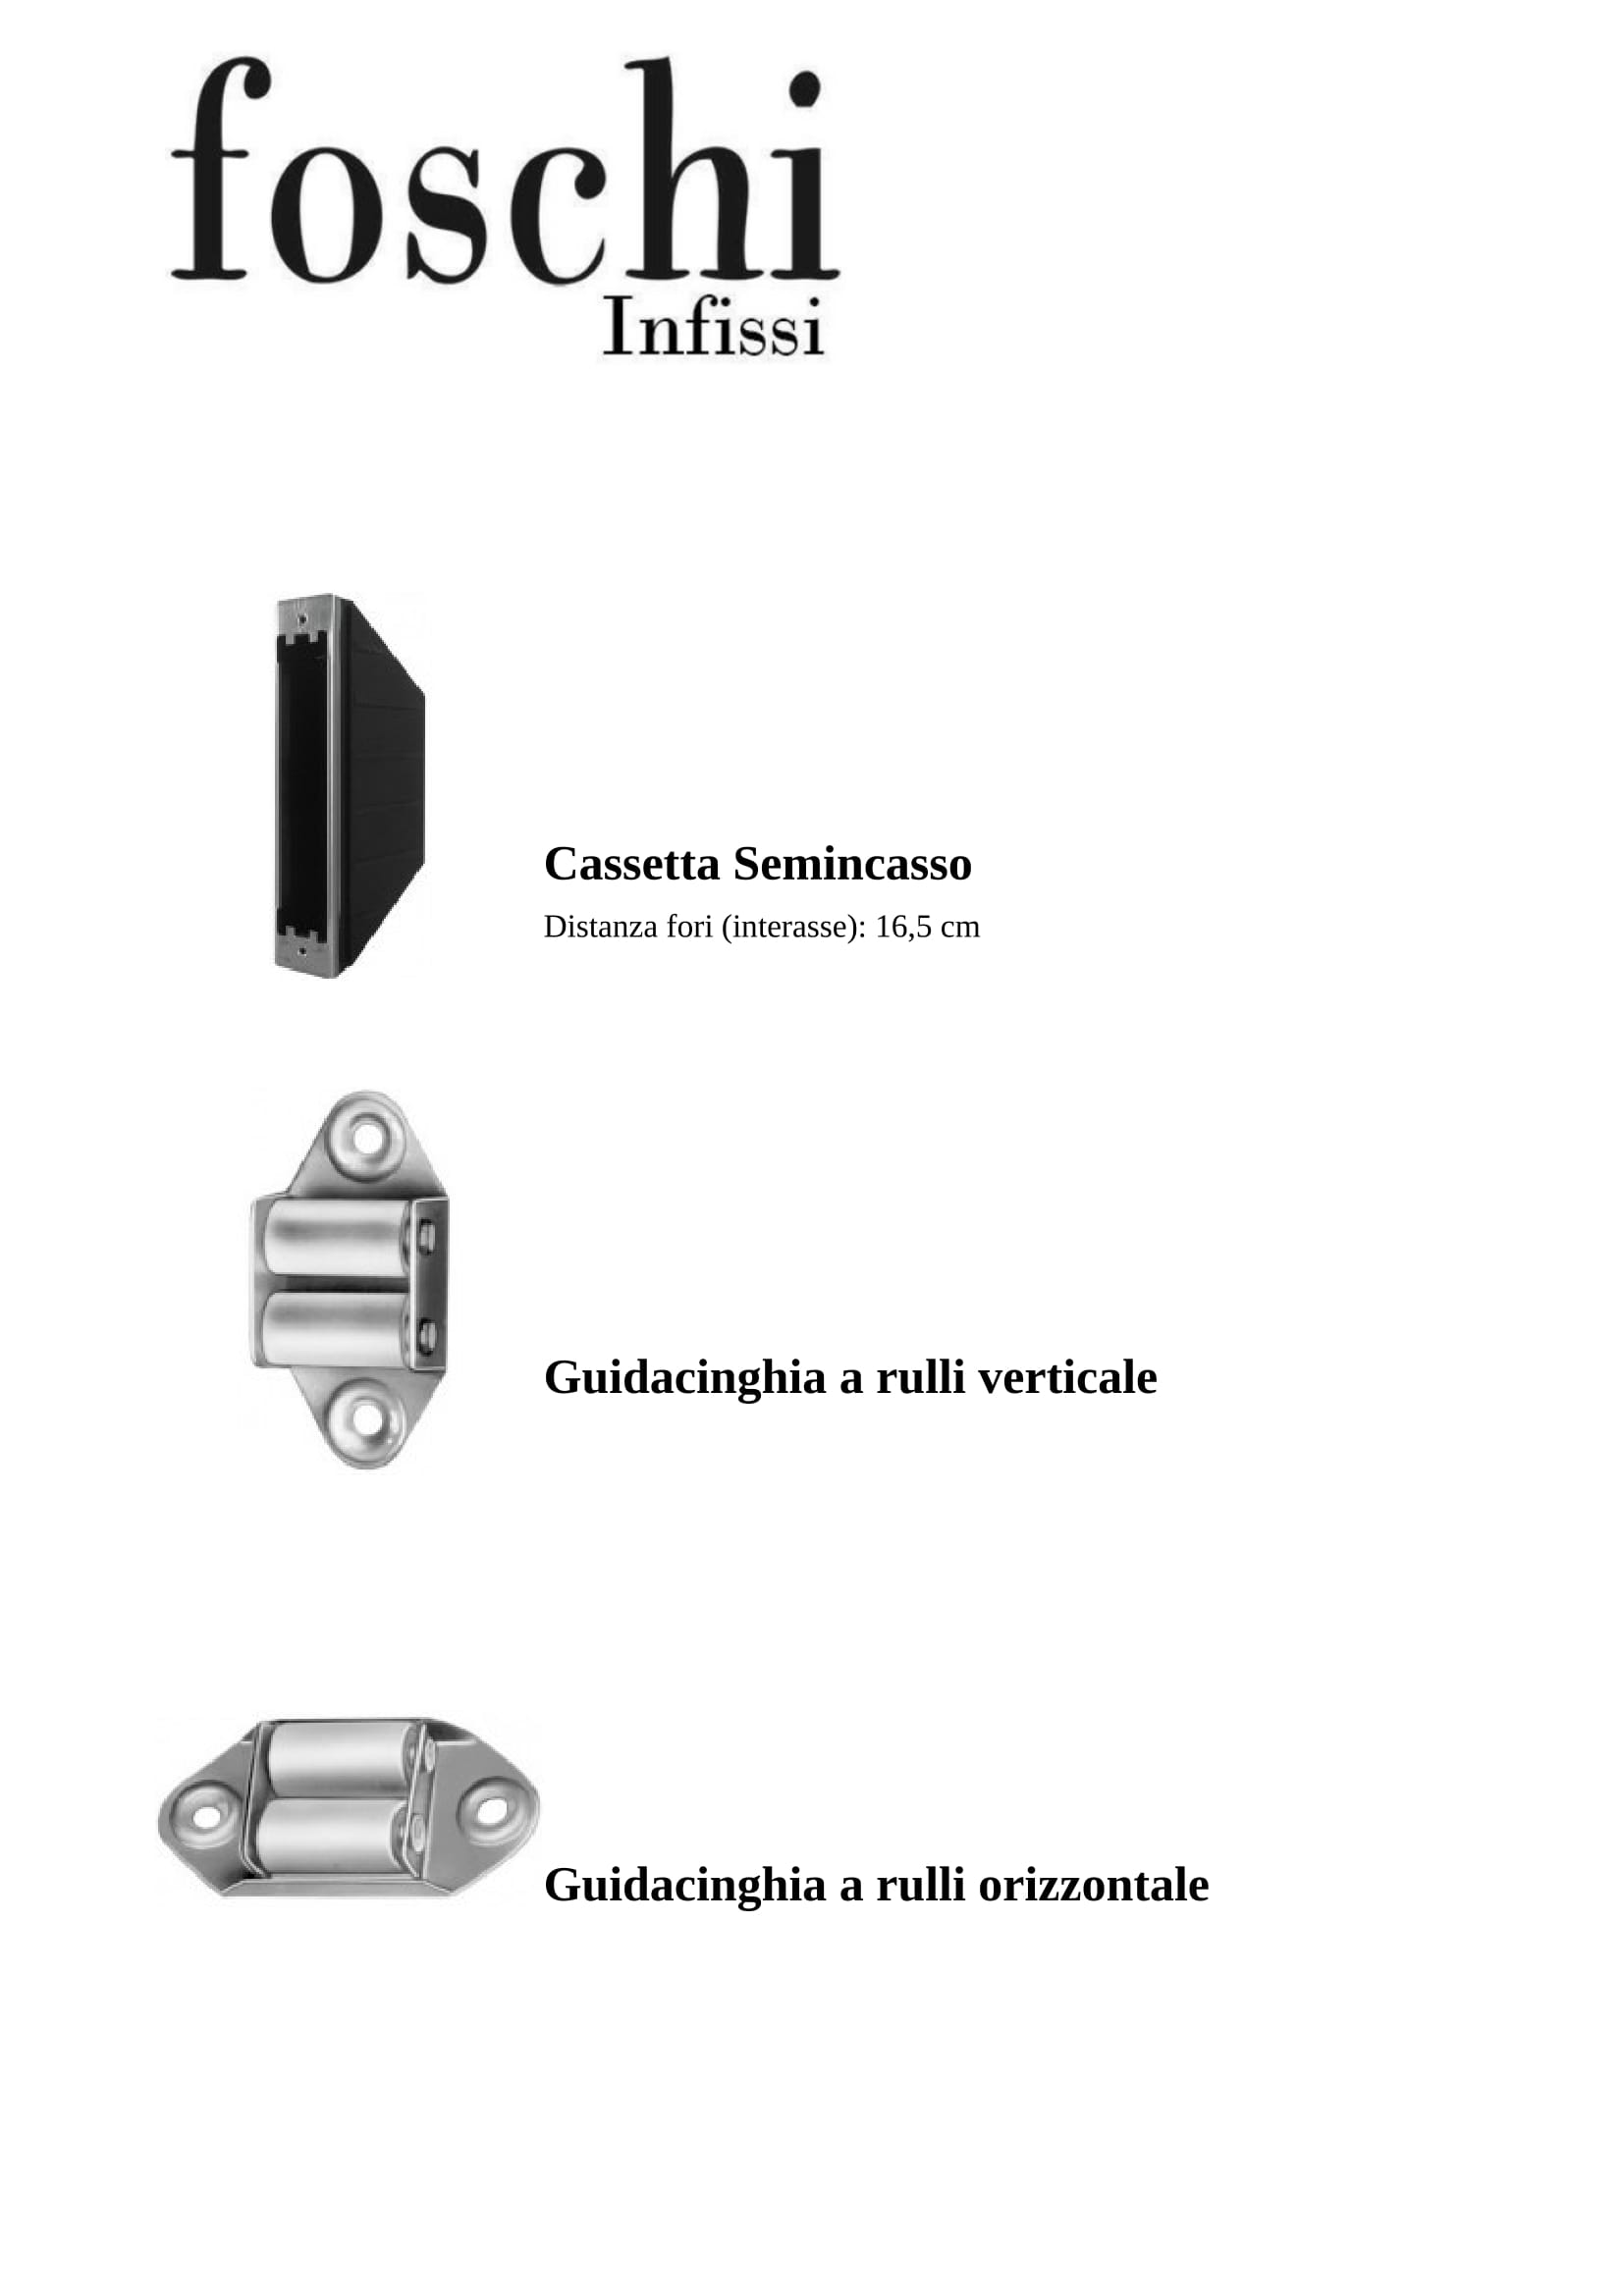 Foschi Infissi - Tapparelle Avvolgibili -> Guide e Accessori -> Guide e Accessori 7